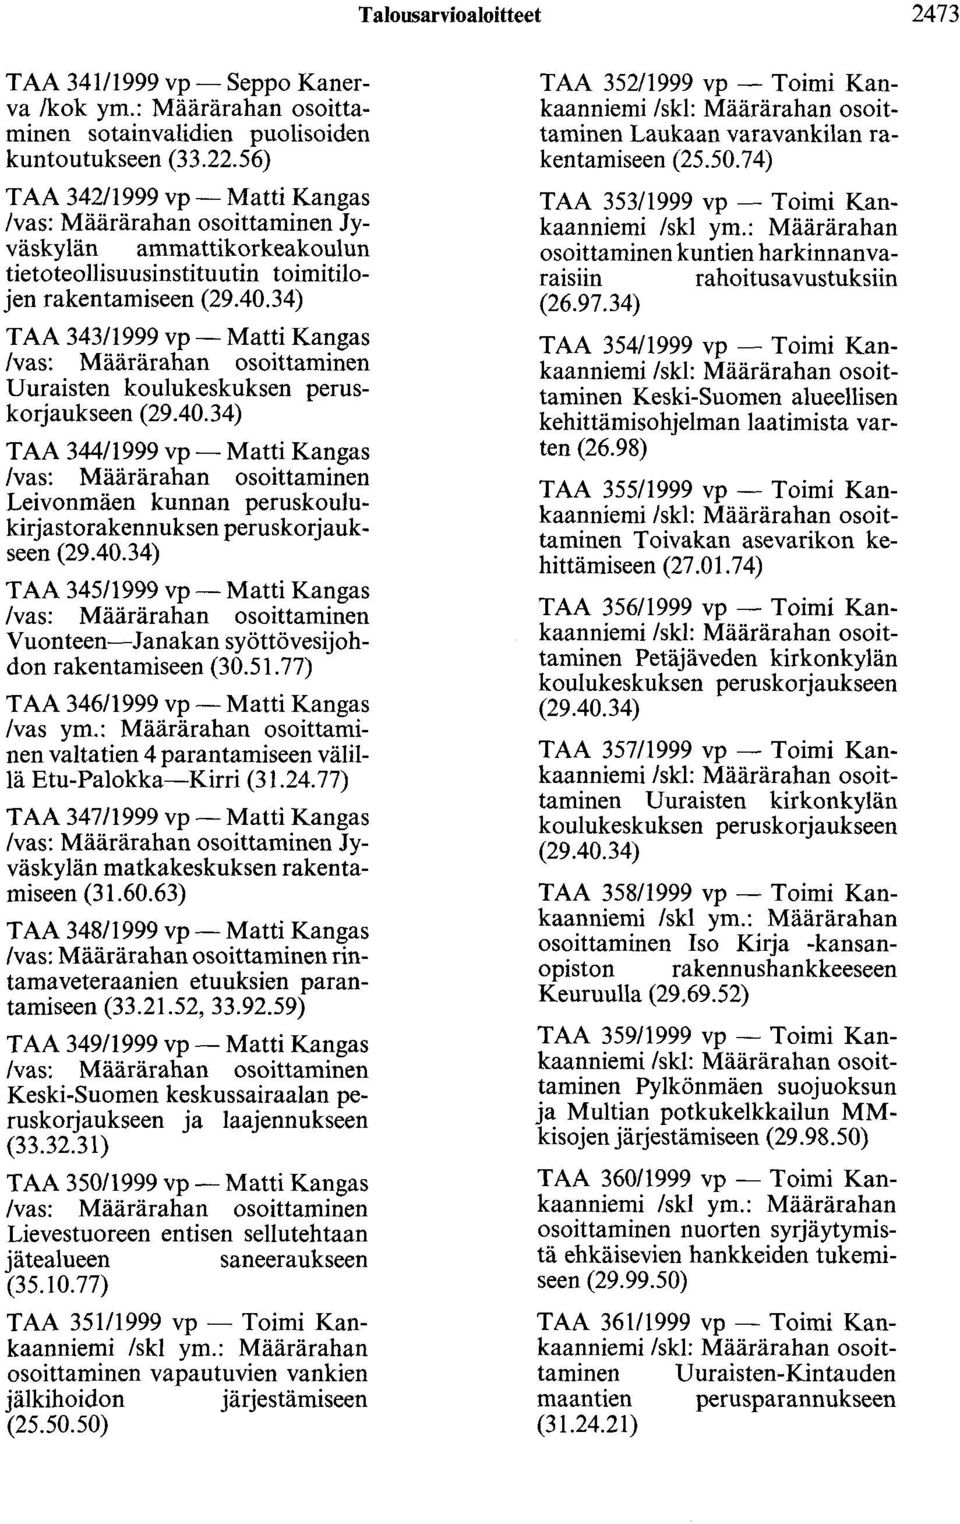 34) TAA 343/1999 vp- Matti Kangas /vas: Määrärahan osoittaminen Uuraisten koulukeskuksen peruskorjaukseen (29.40.